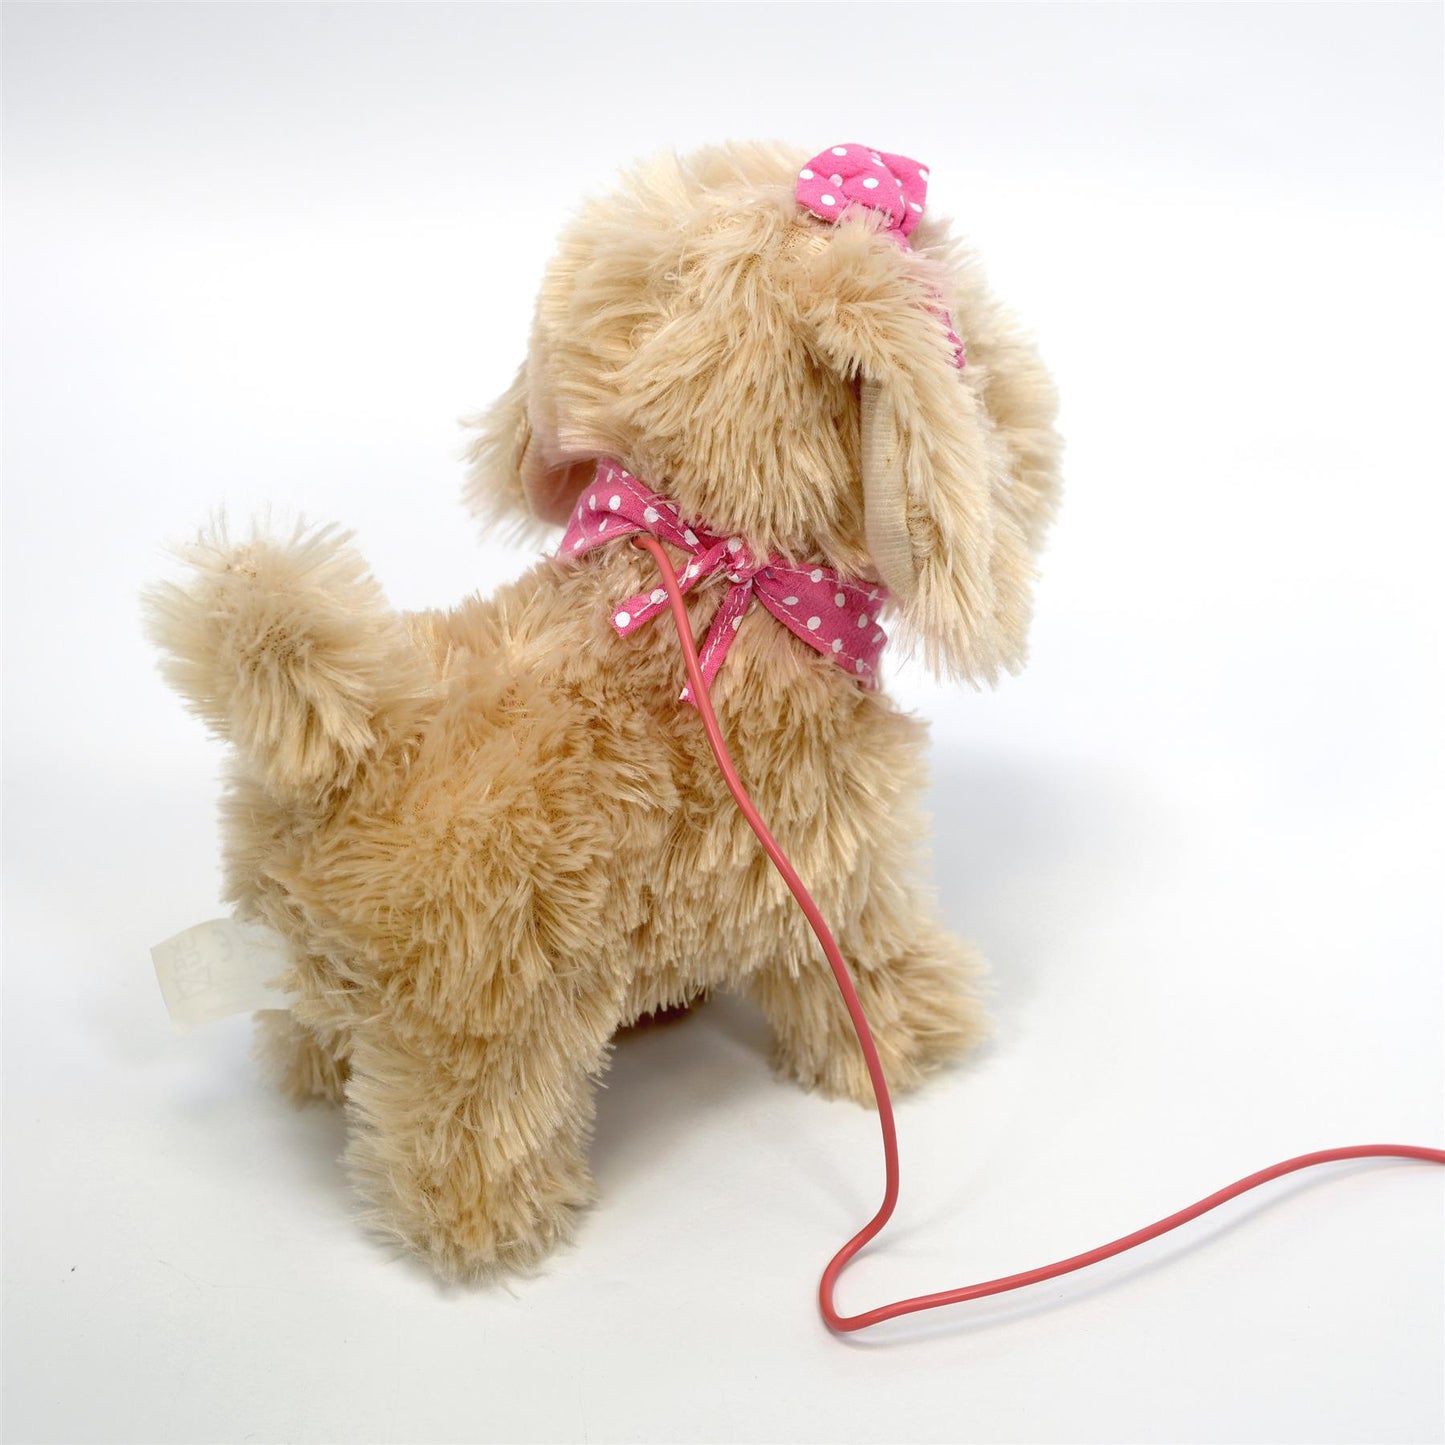 Fluffy Plush Walking & Talking Dog Toy by The Magic Toy Shop - UKBuyZone